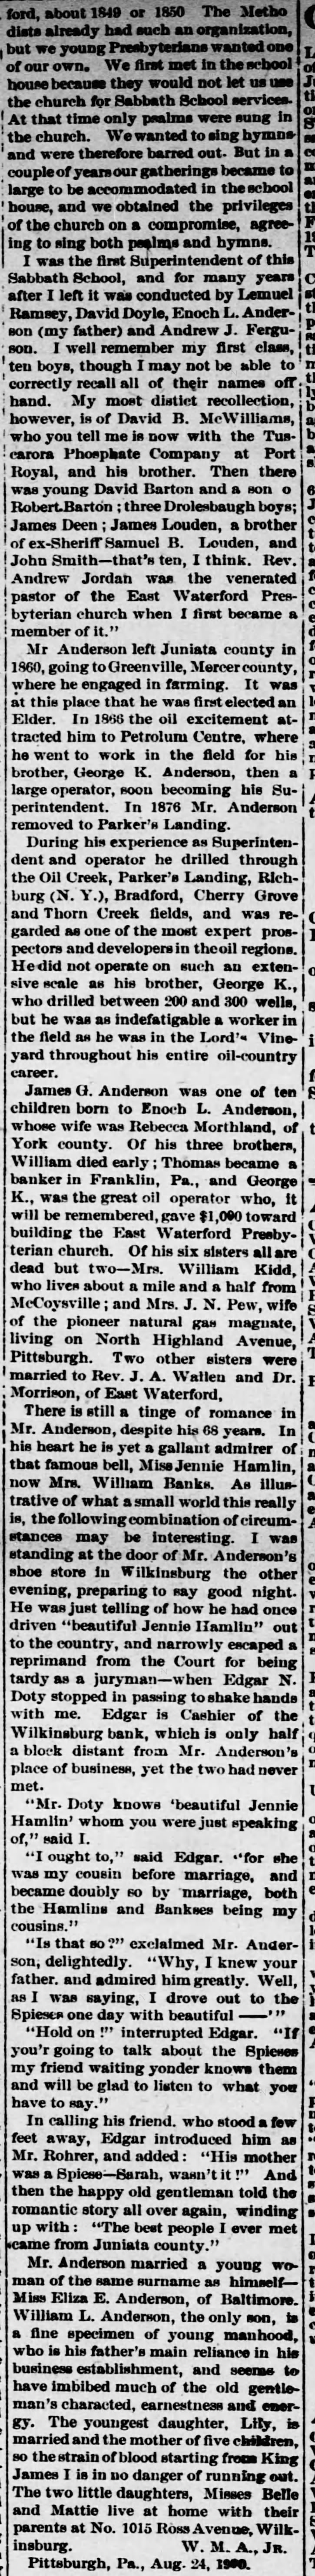 Juniata Sentinel Republican (Mifflintown, PA) 8/29/1900 cont